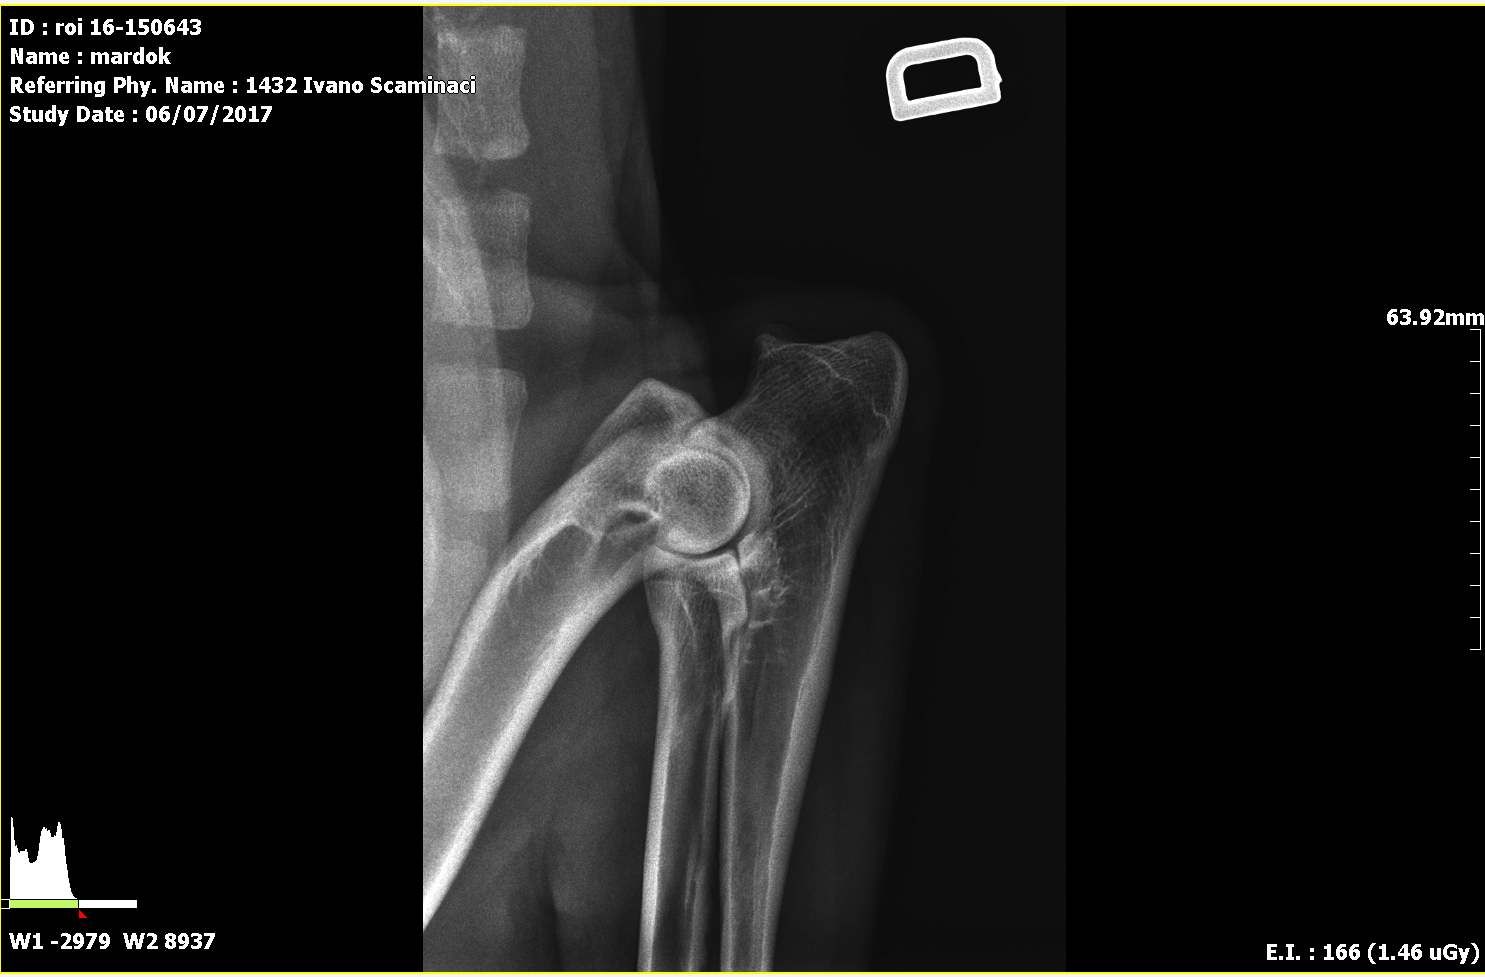 Radiografie ufficiali per la ricerca della displasia dell'anca e del gomito